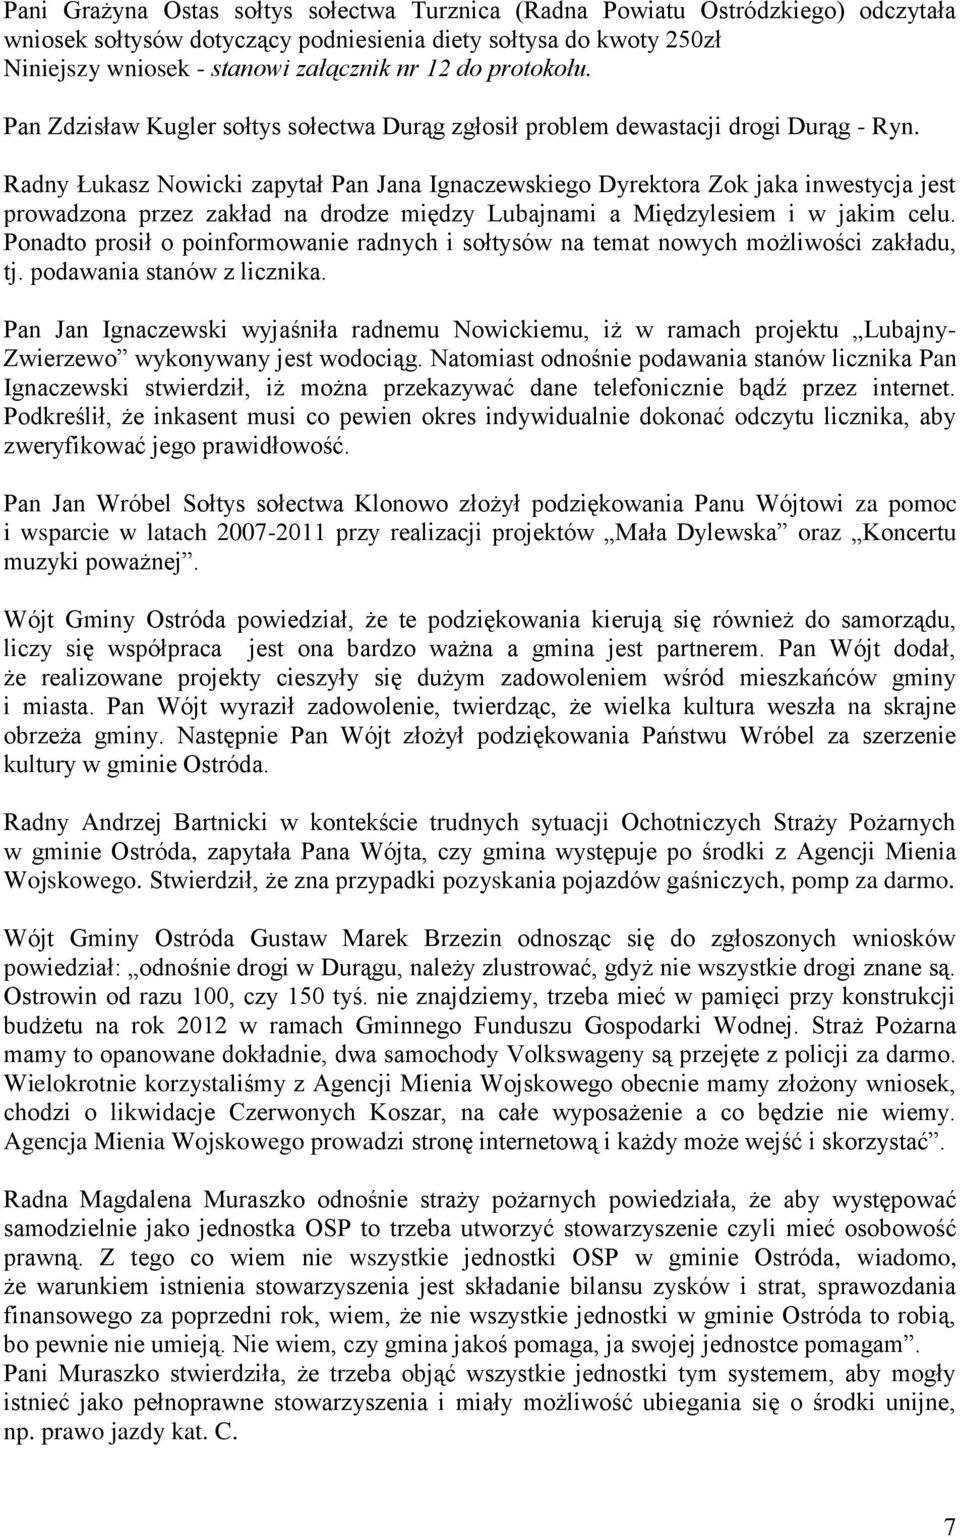 Radny Łukasz Nowicki zapytał Pan Jana Ignaczewskiego Dyrektora Zok jaka inwestycja jest prowadzona przez zakład na drodze między Lubajnami a Międzylesiem i w jakim celu.